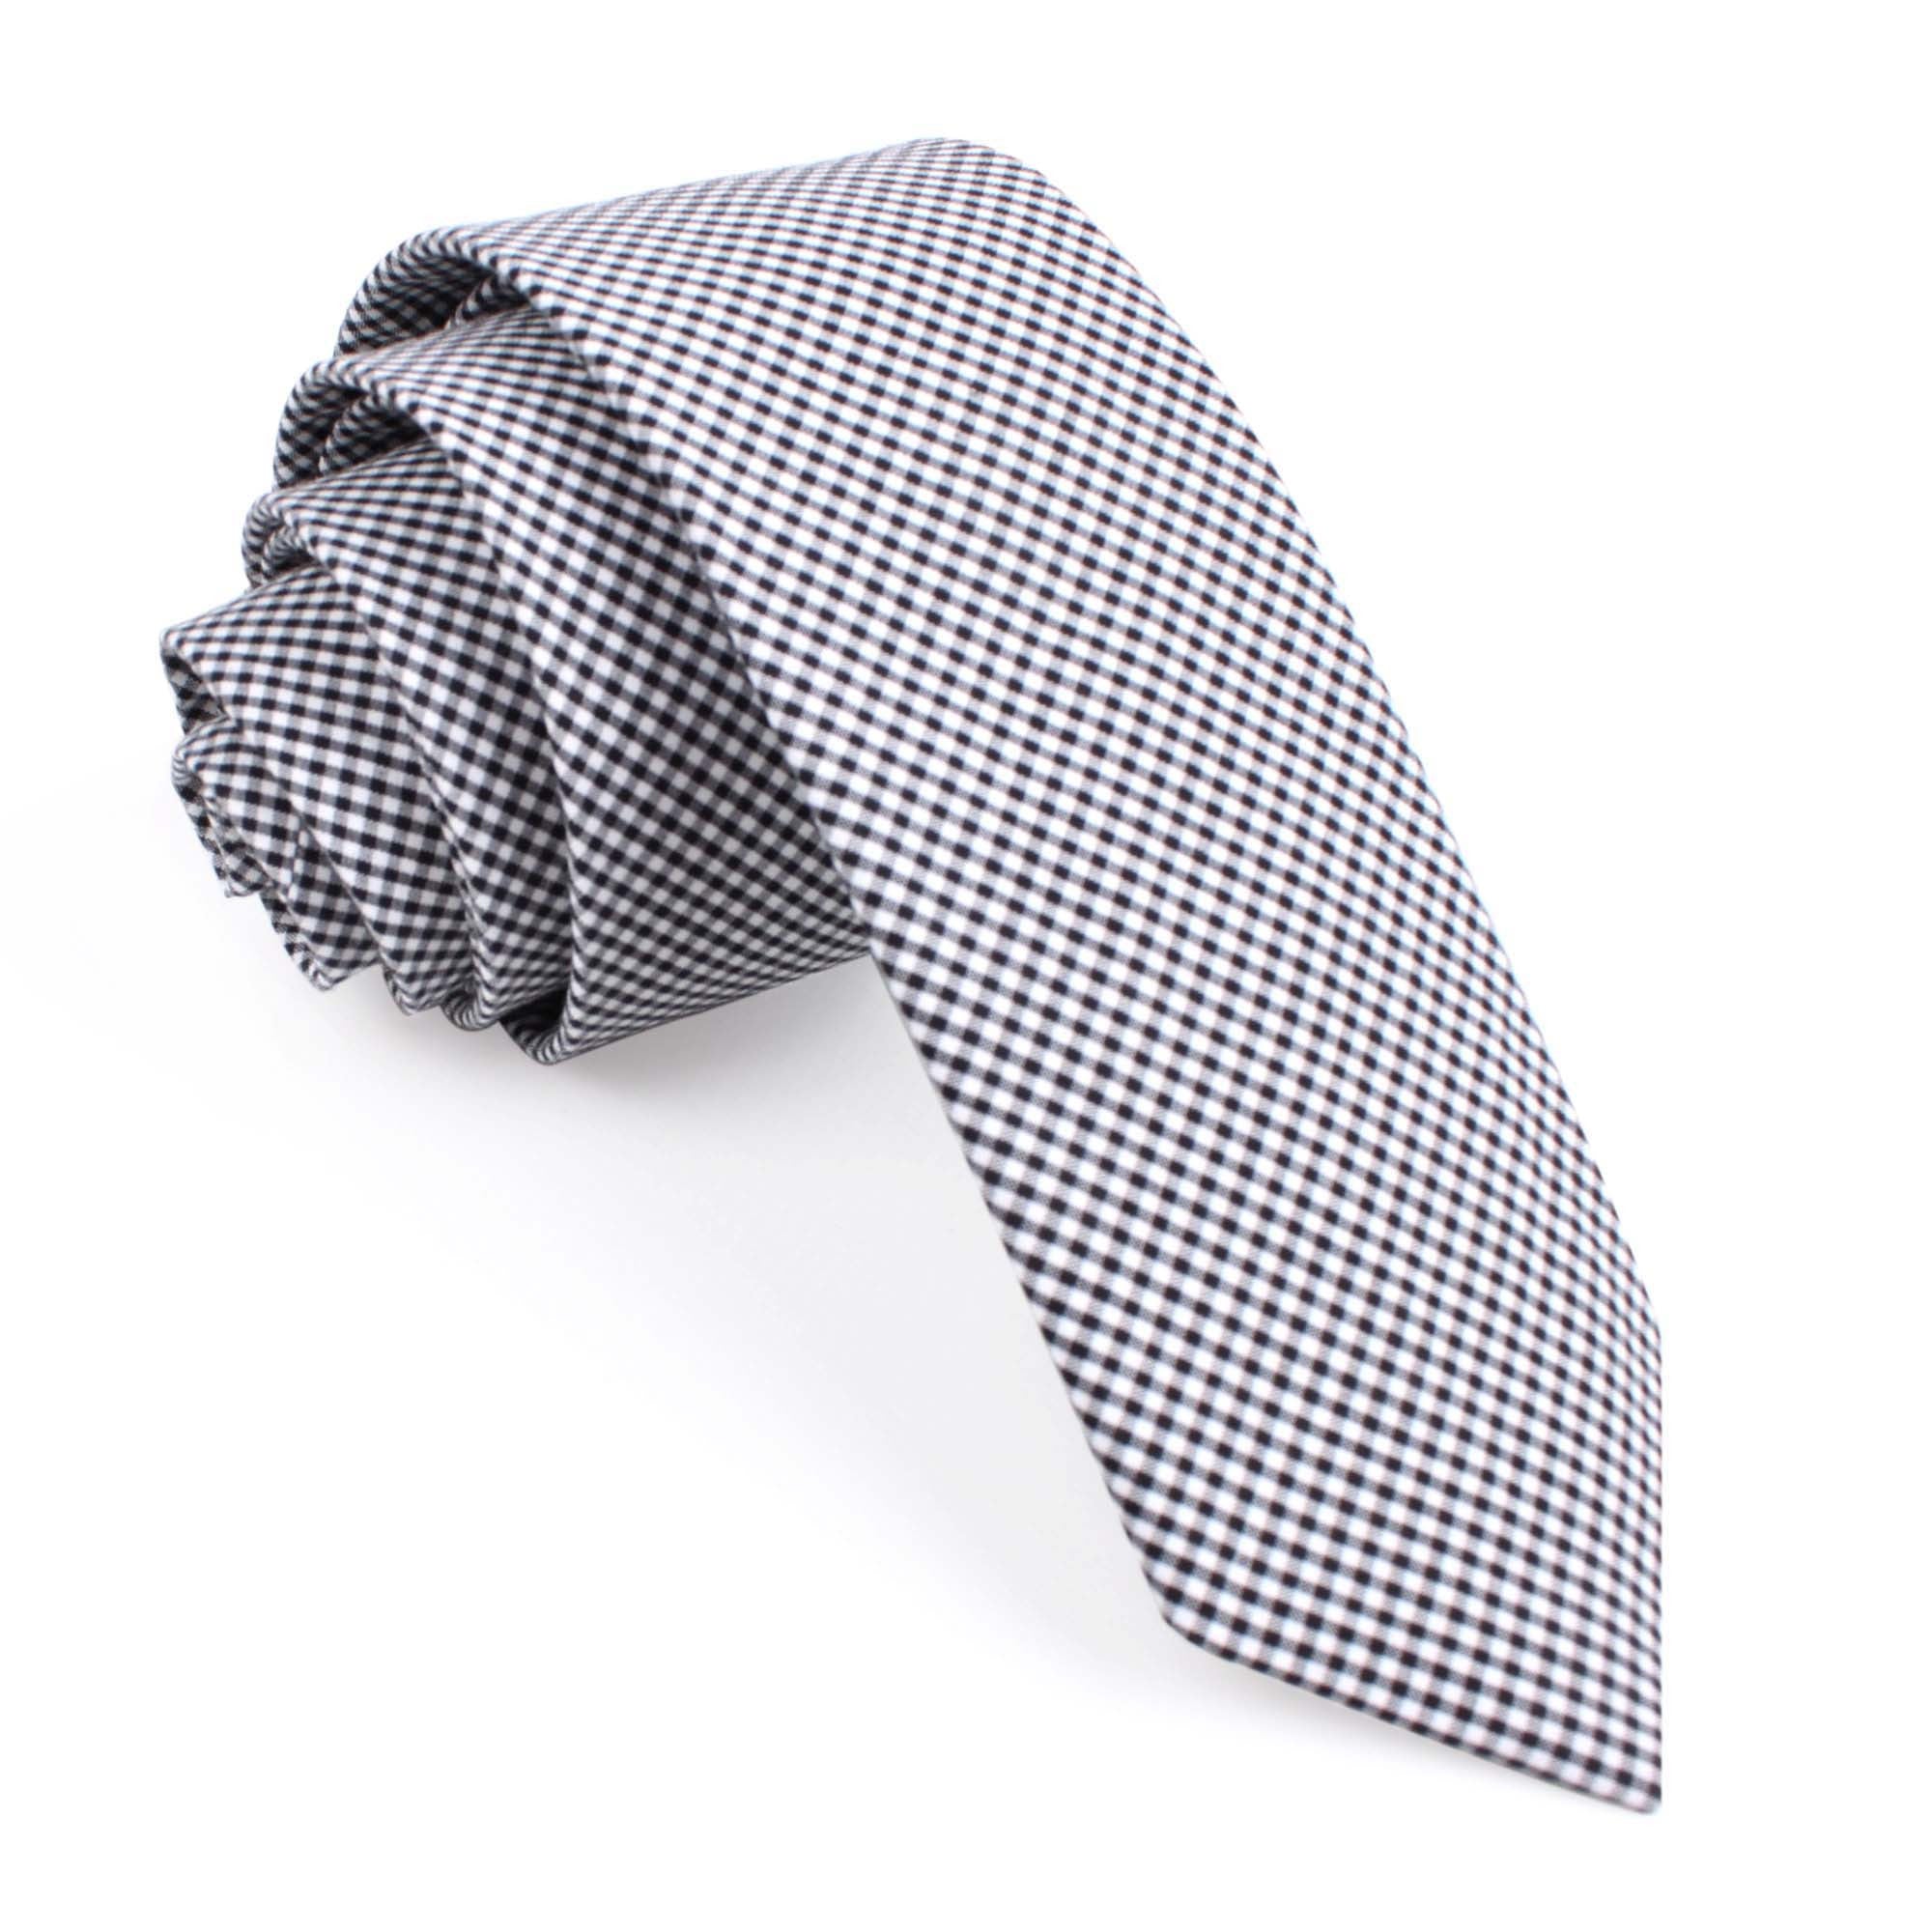 Black Gingham Cotton Skinny Tie | Mens Check Plaid Narrow Slim Ties AU ...